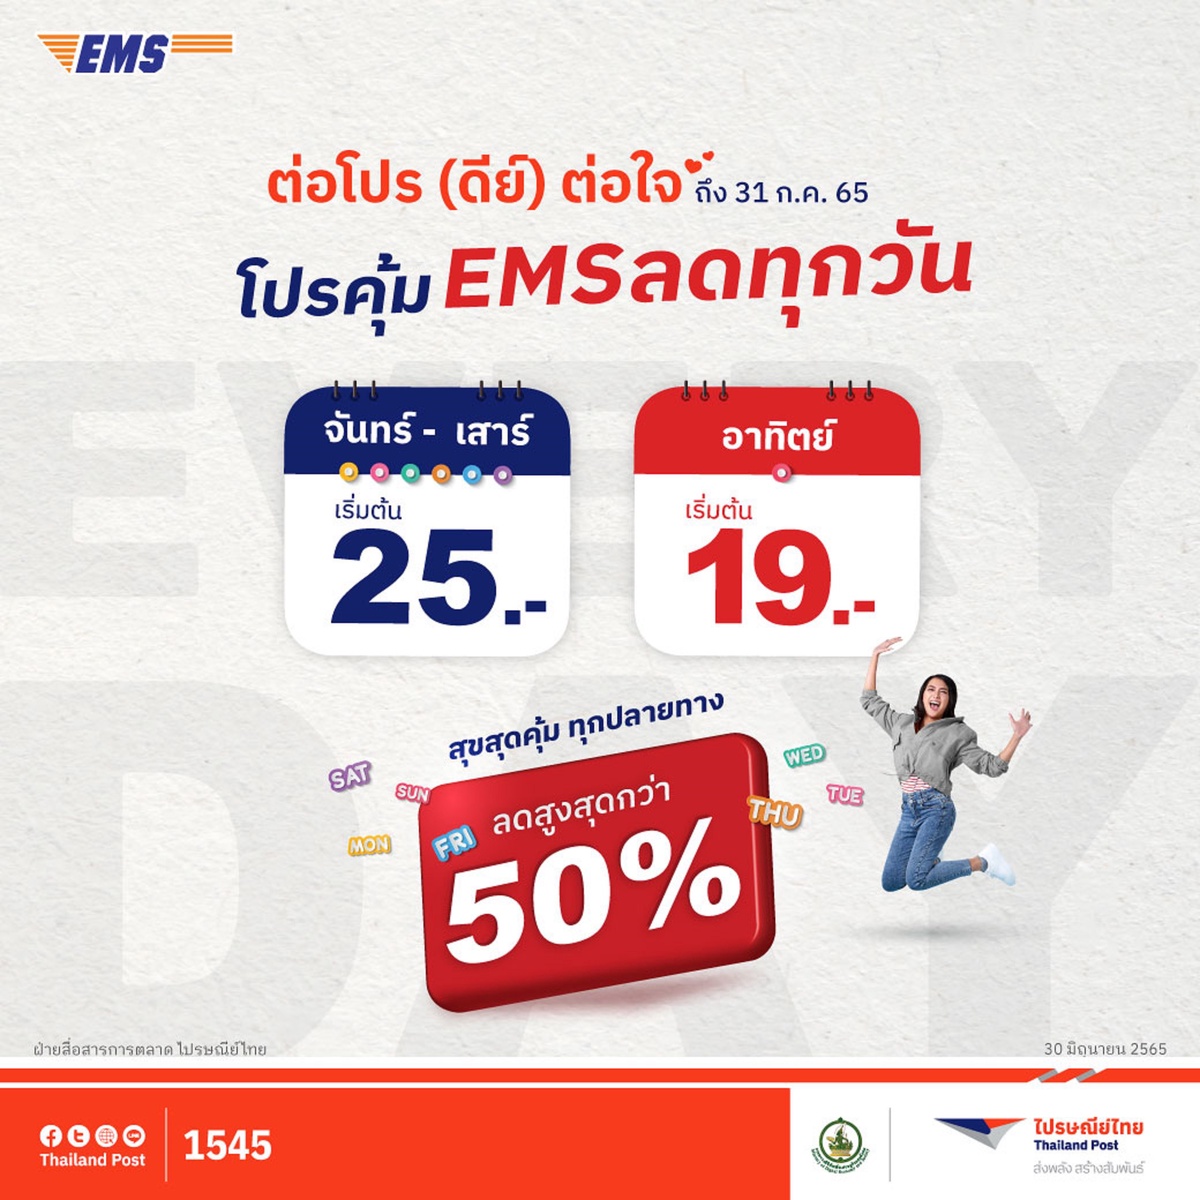 ไปรษณีย์ไทย ปรับอัตราค่าบริการจดหมาย - ลงทะเบียน พร้อมลดราคาจัดโปรโมชันบริการ EMS ถูกสุด 19 บาท